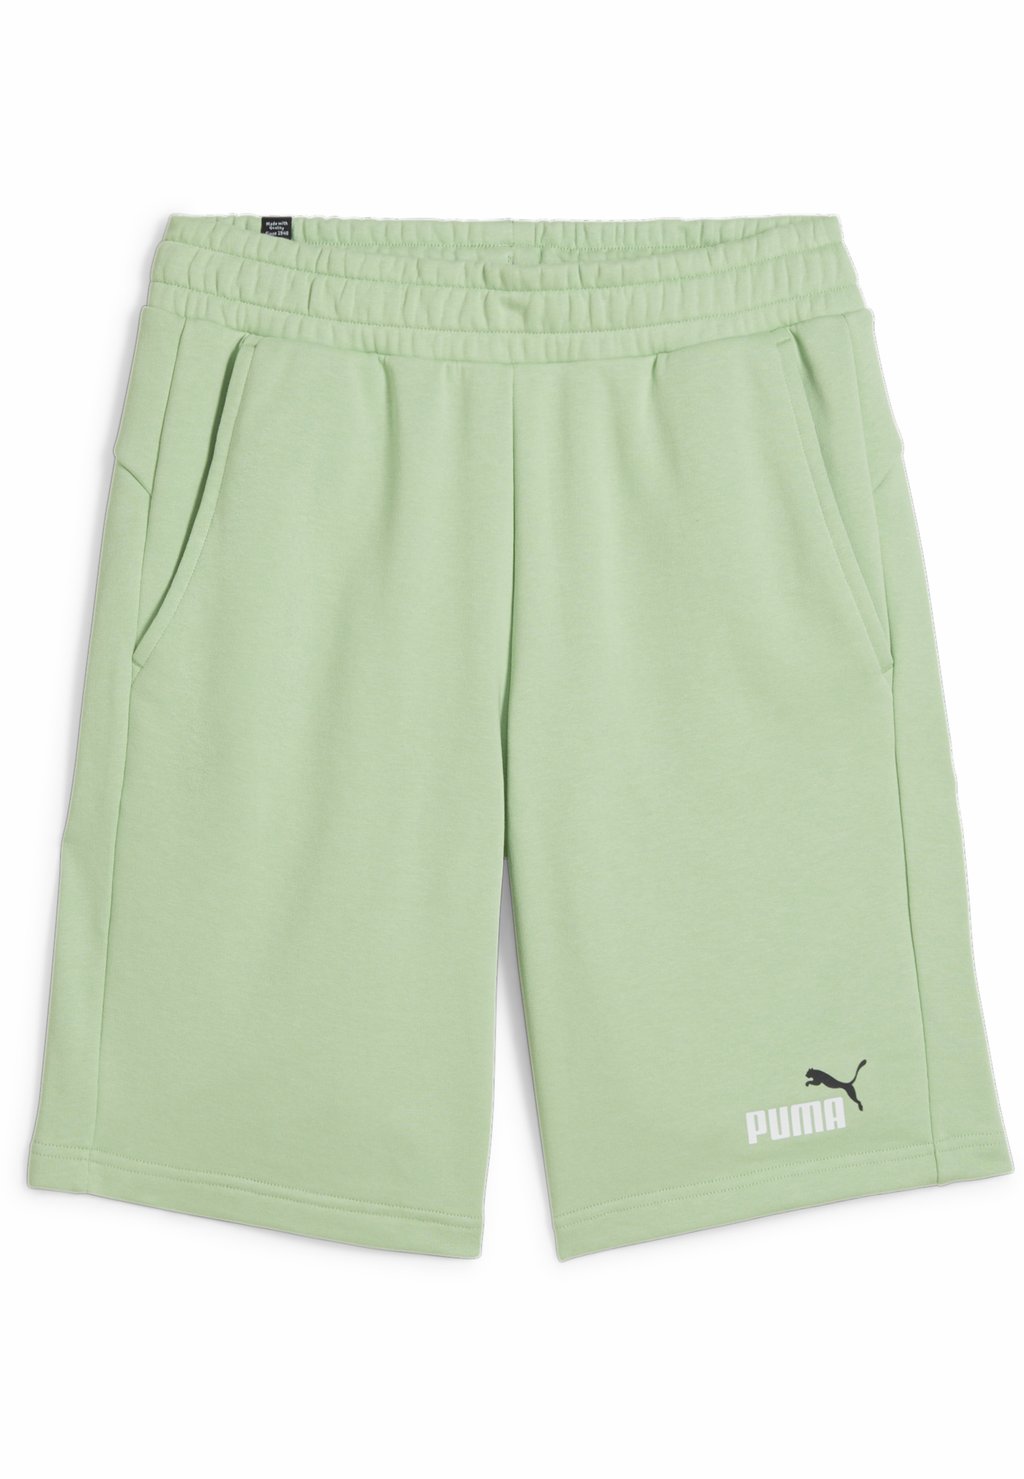 Спортивные шорты Puma, чистый зеленый цвет